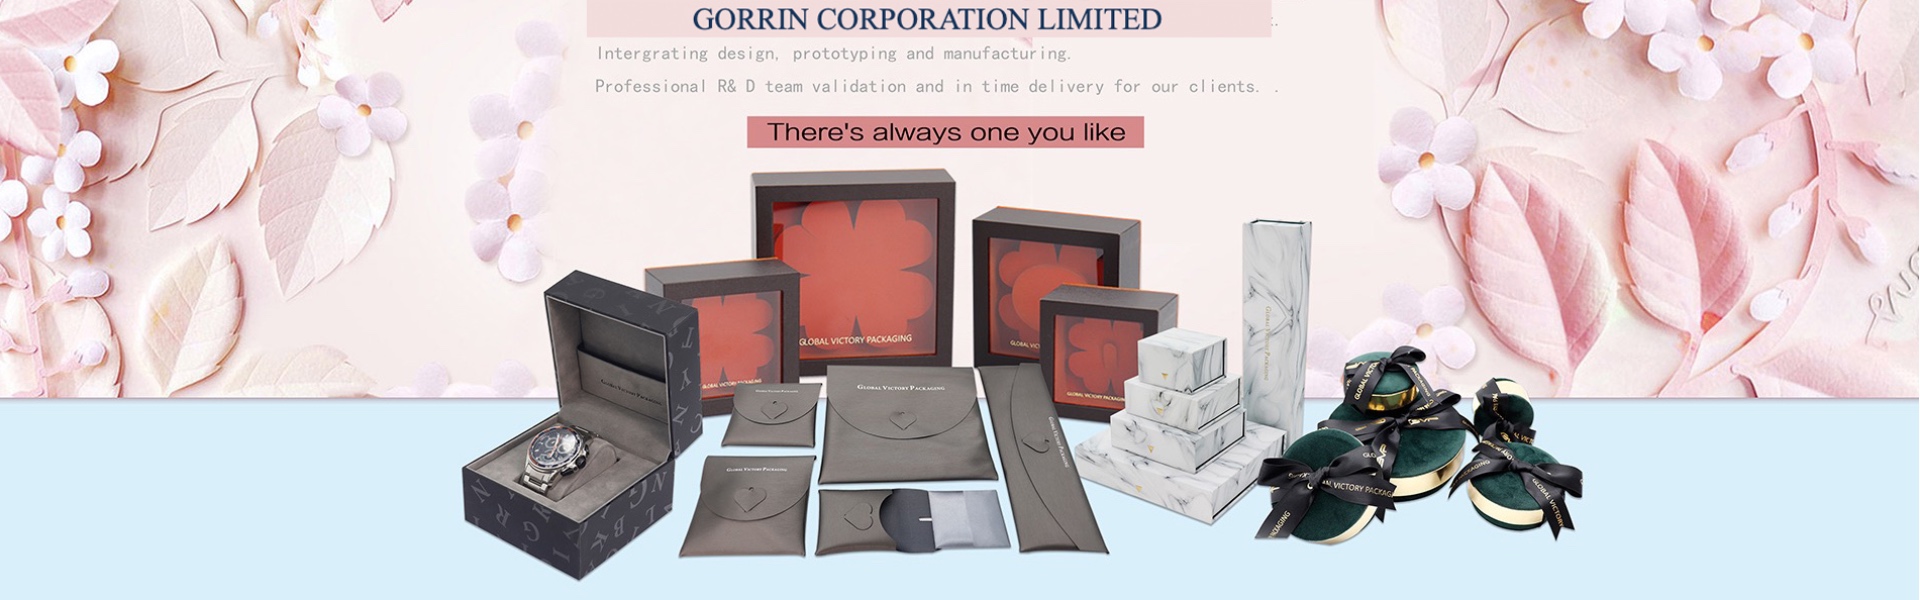 紙箱 、 ジ ュ エ リ ー 、 ジ ュ エ エ リ ー ボ ッ ク ス,Gorrin corporation limited